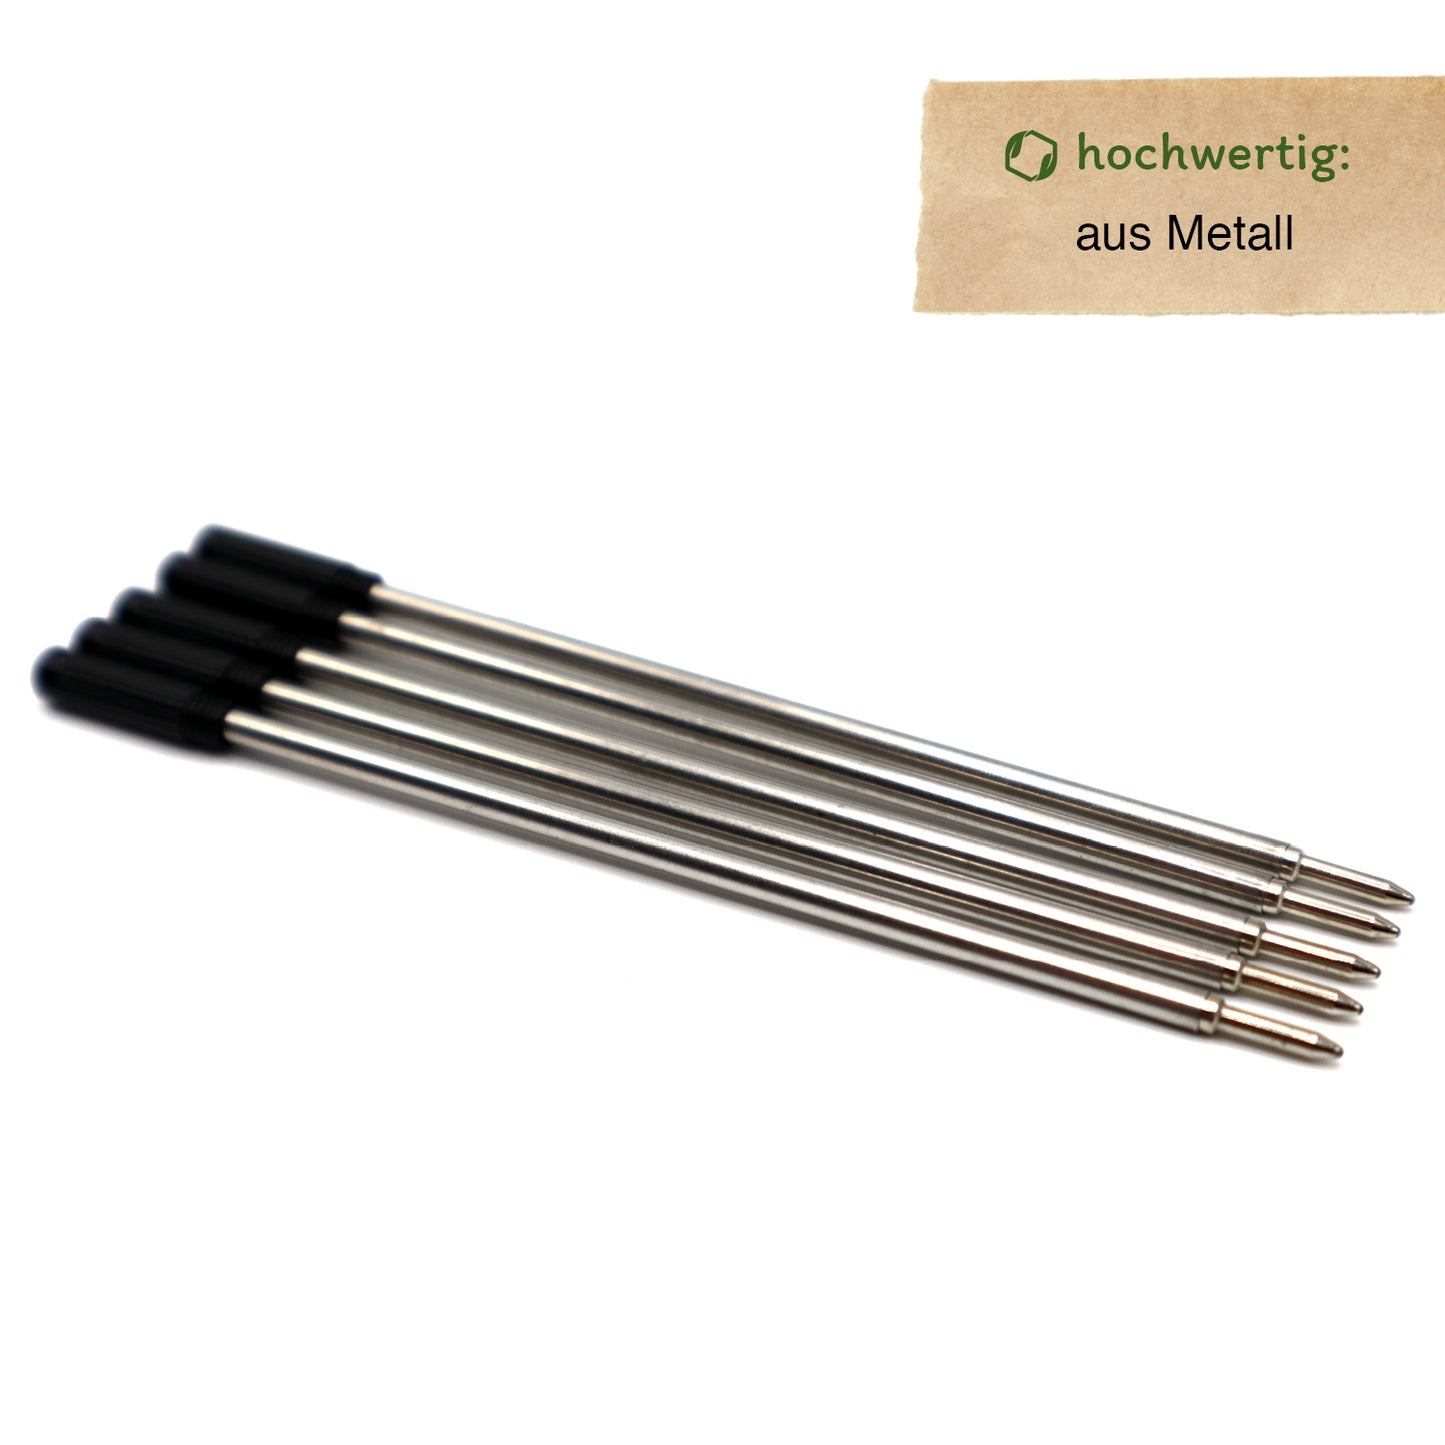 MORWE Metall-Kugelschreiberminen-Set – Nachhaltige Internationale Minen C1 (Twist) 5 Stück